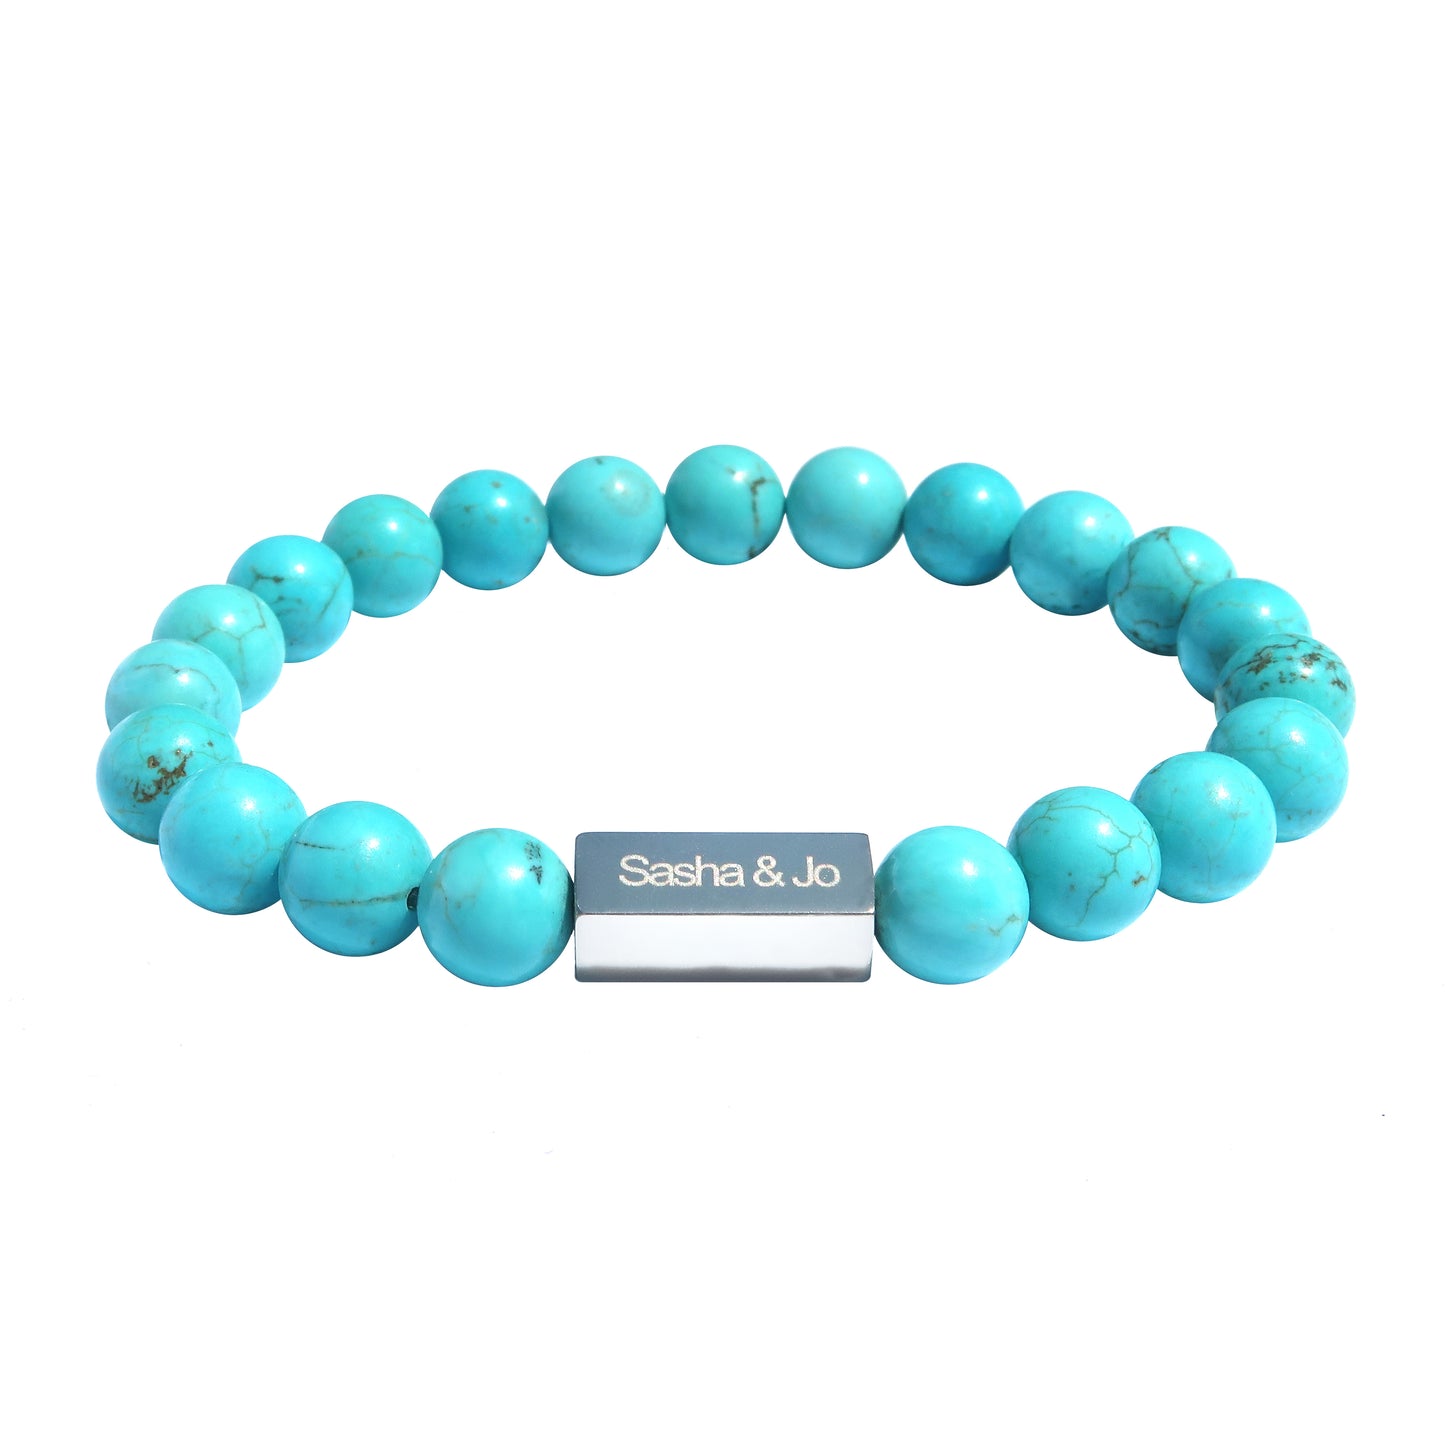 Sasha & Jo turquoise beads bracelet